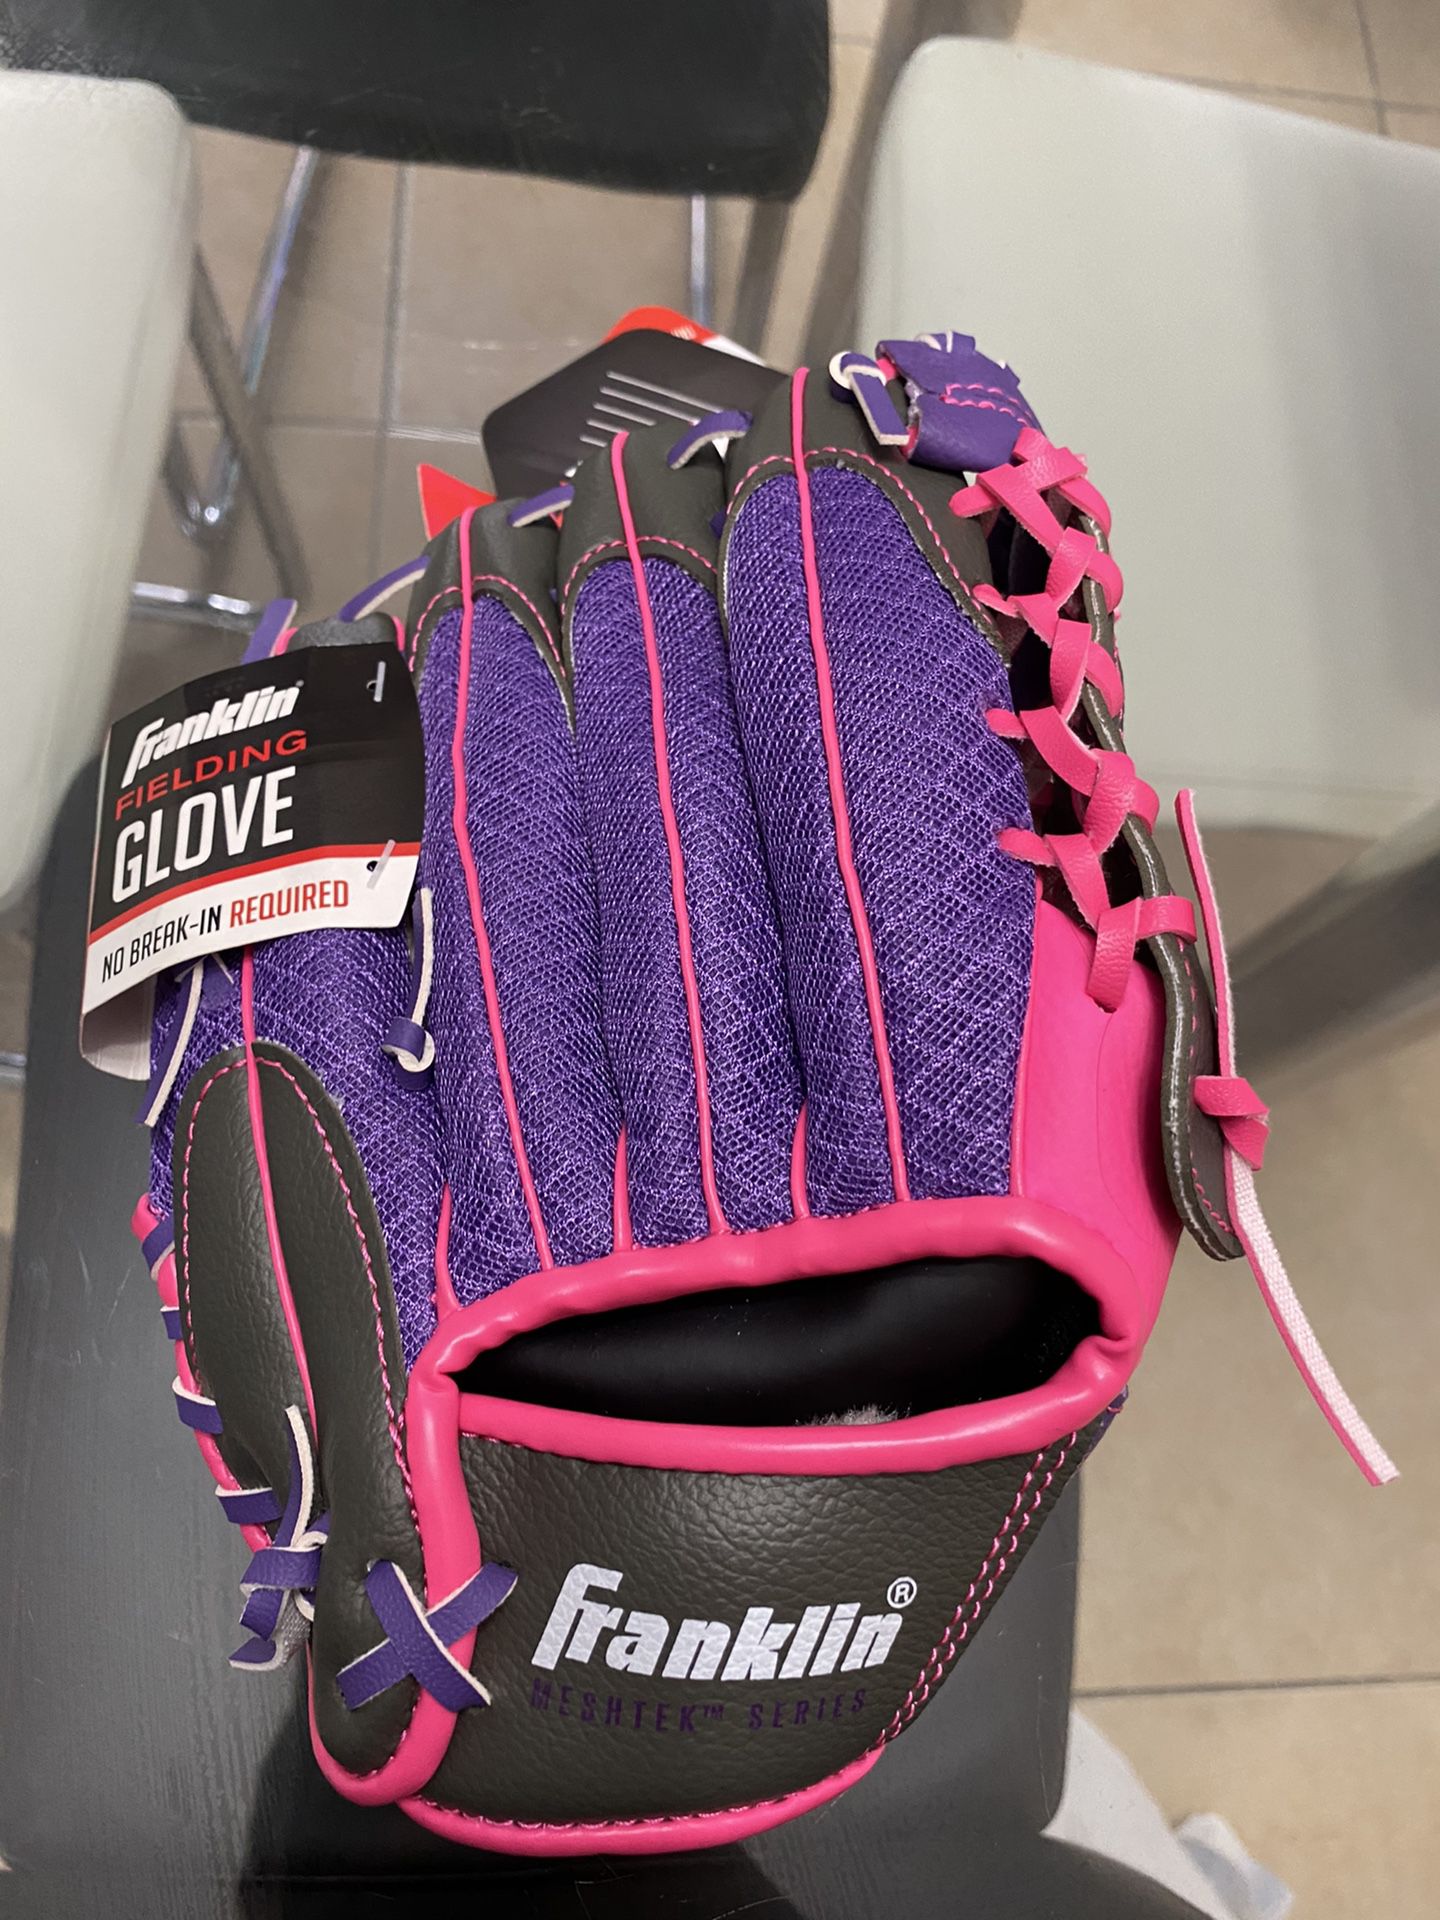 ⚾️ ⚾️ ⚾️ Baseball glove ⚾️ ⚾️ ⚾️